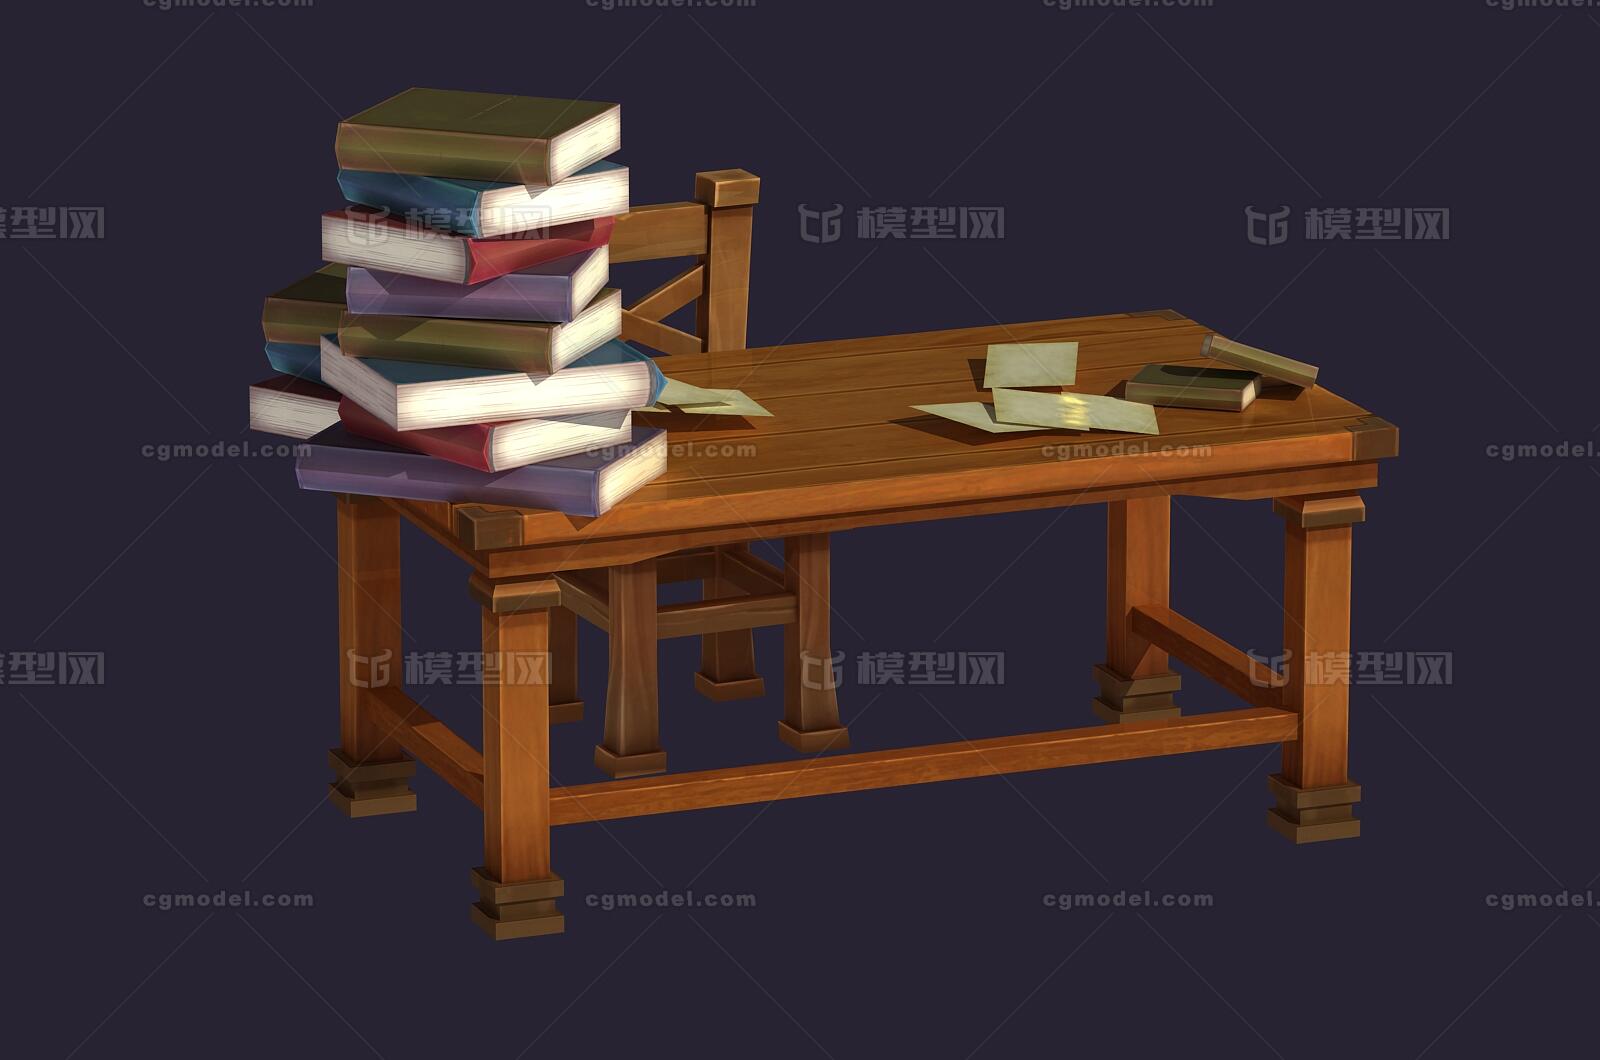 卡通 手绘 q版 办公桌 图书馆桌椅 二次元 动漫 桌子 椅子